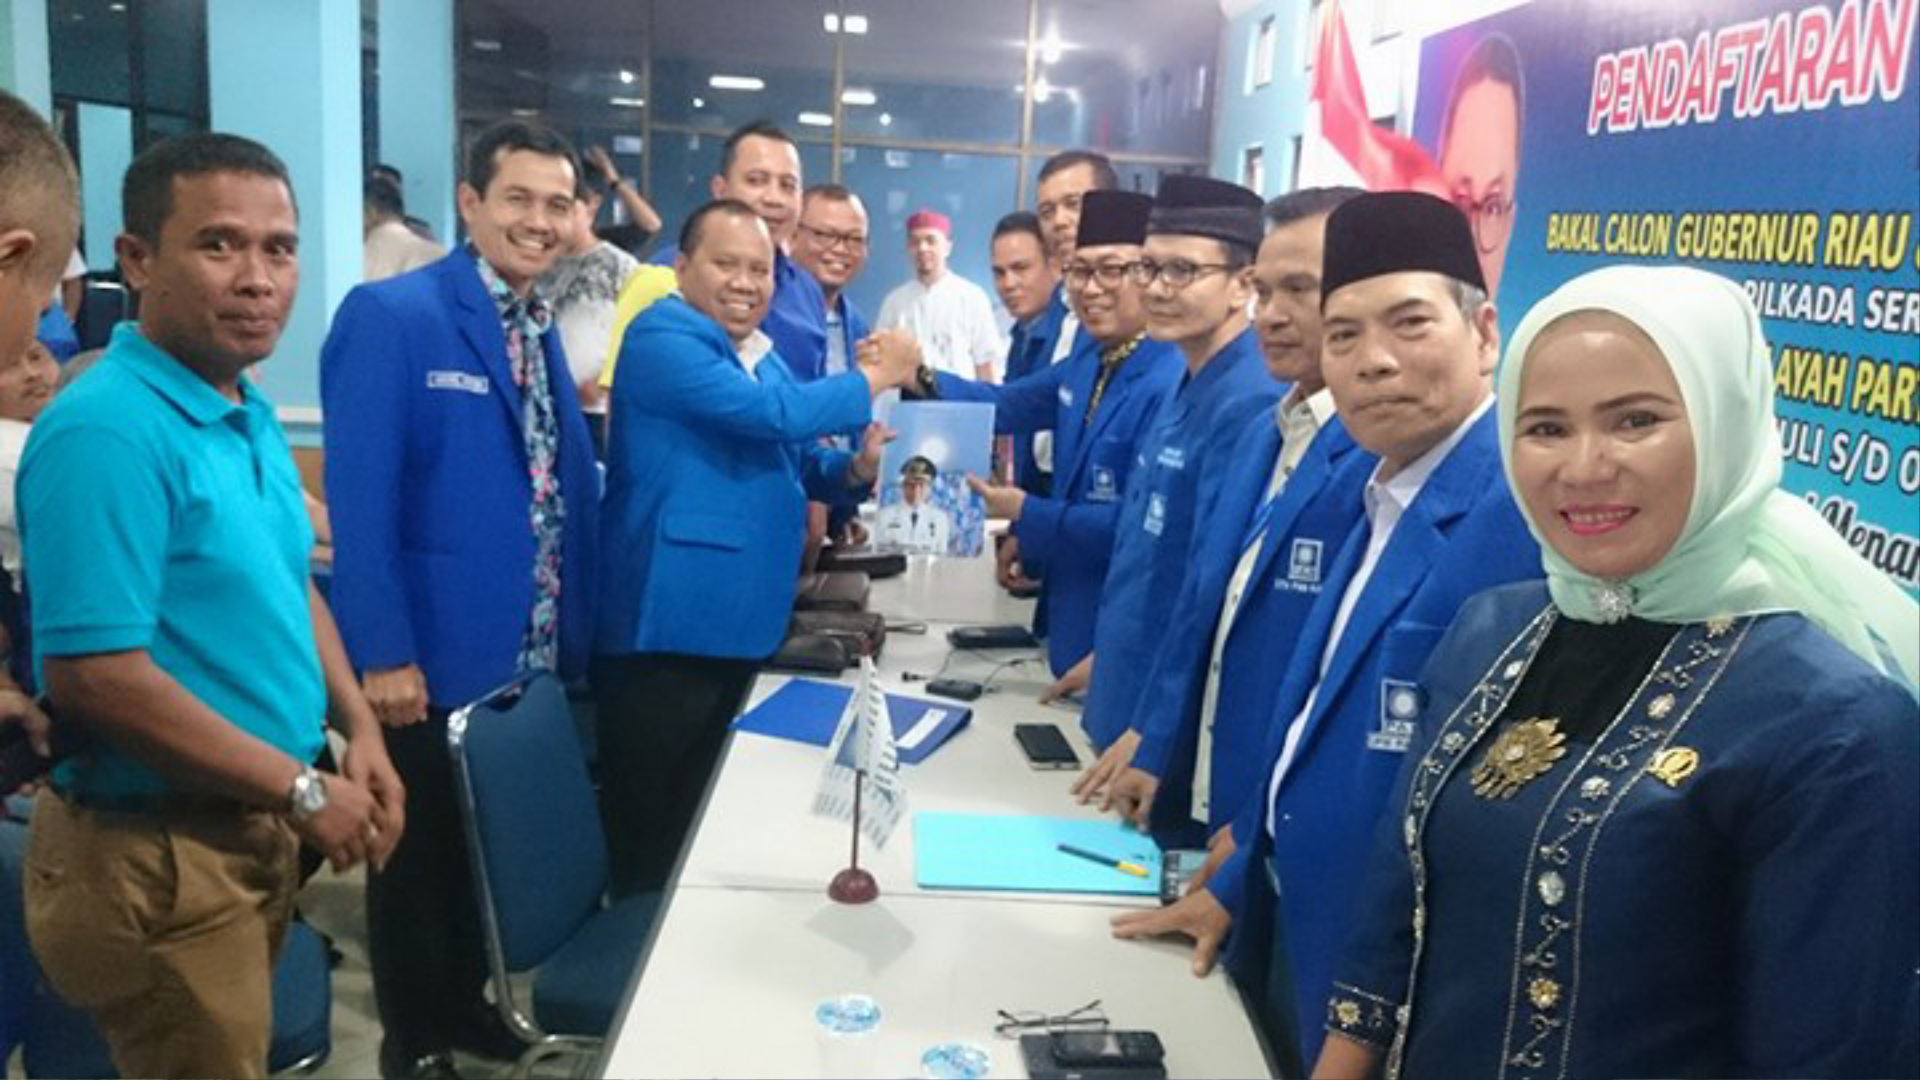 Mendaftar Sebagai Calon Gubernur Riau Dari PAN, Irwan Nasir Diteriaki Menang